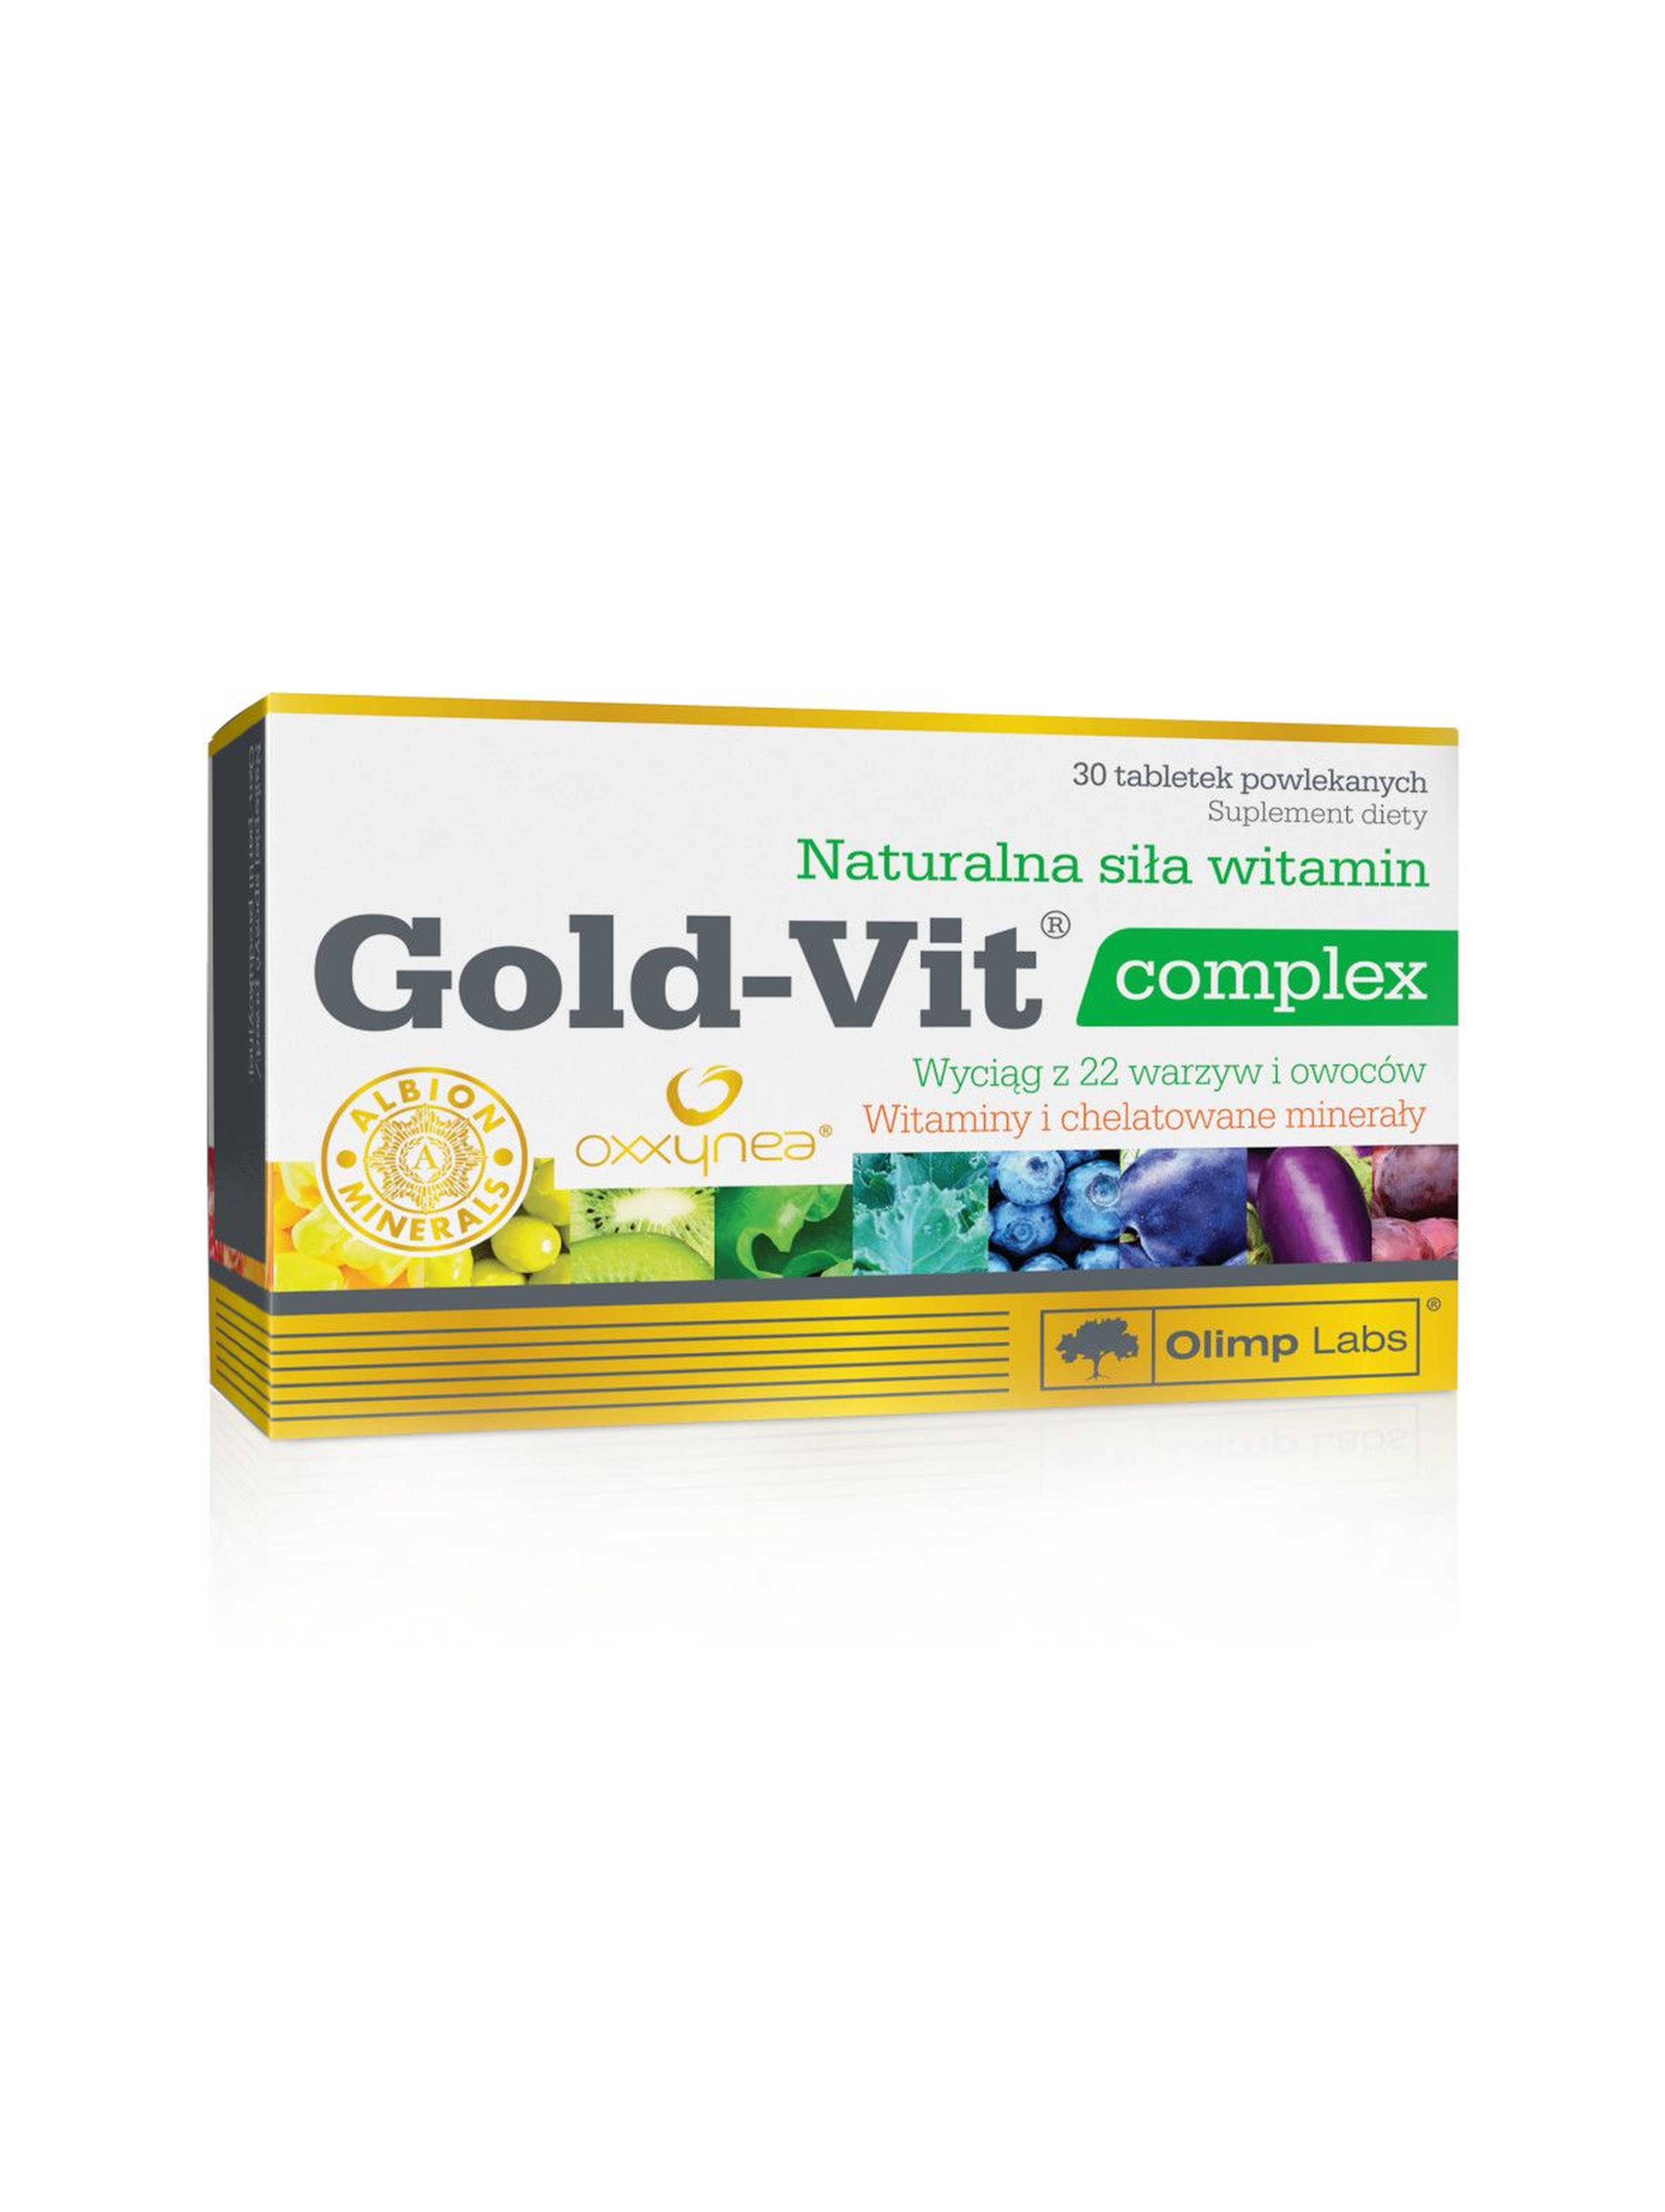 Gold-Vit complex 30 tabletek powlekanych